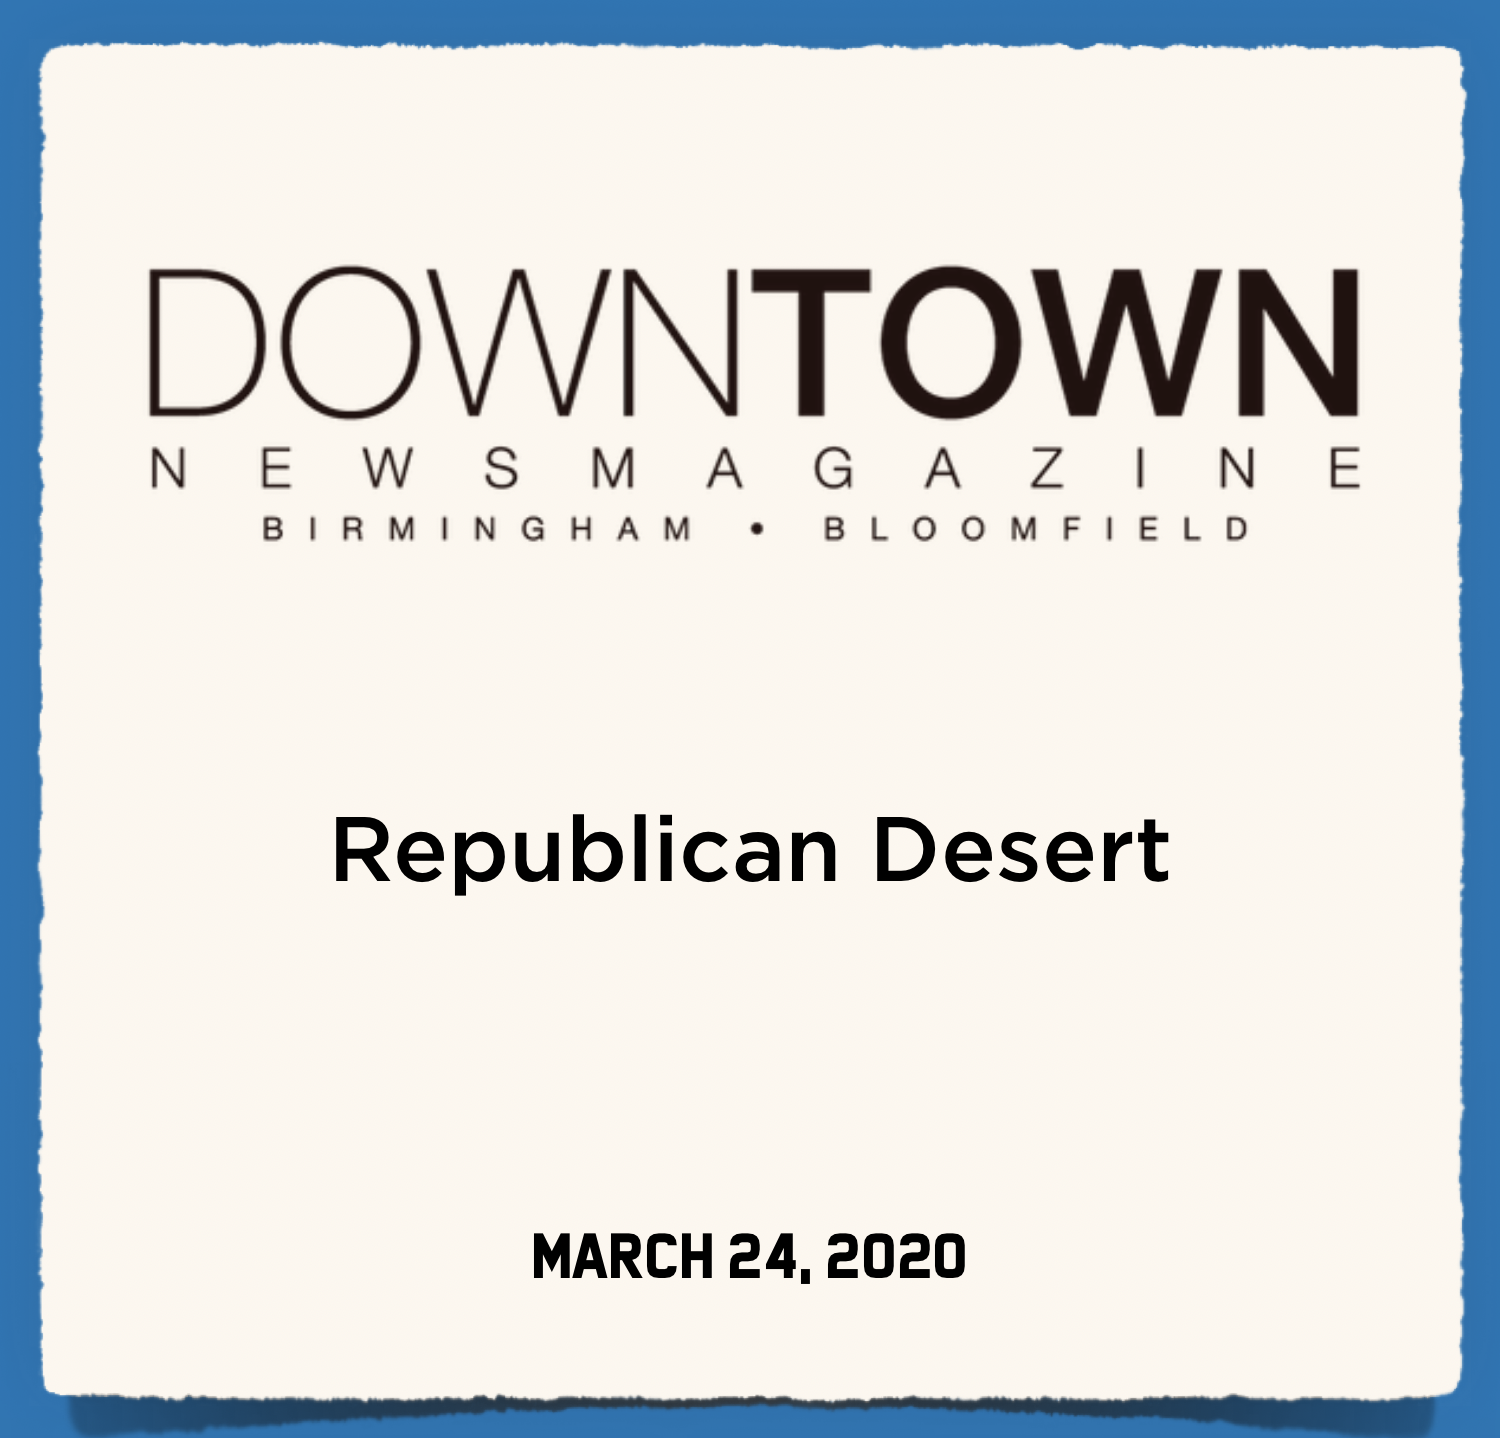 Downtown News Magazine: Republican Desert